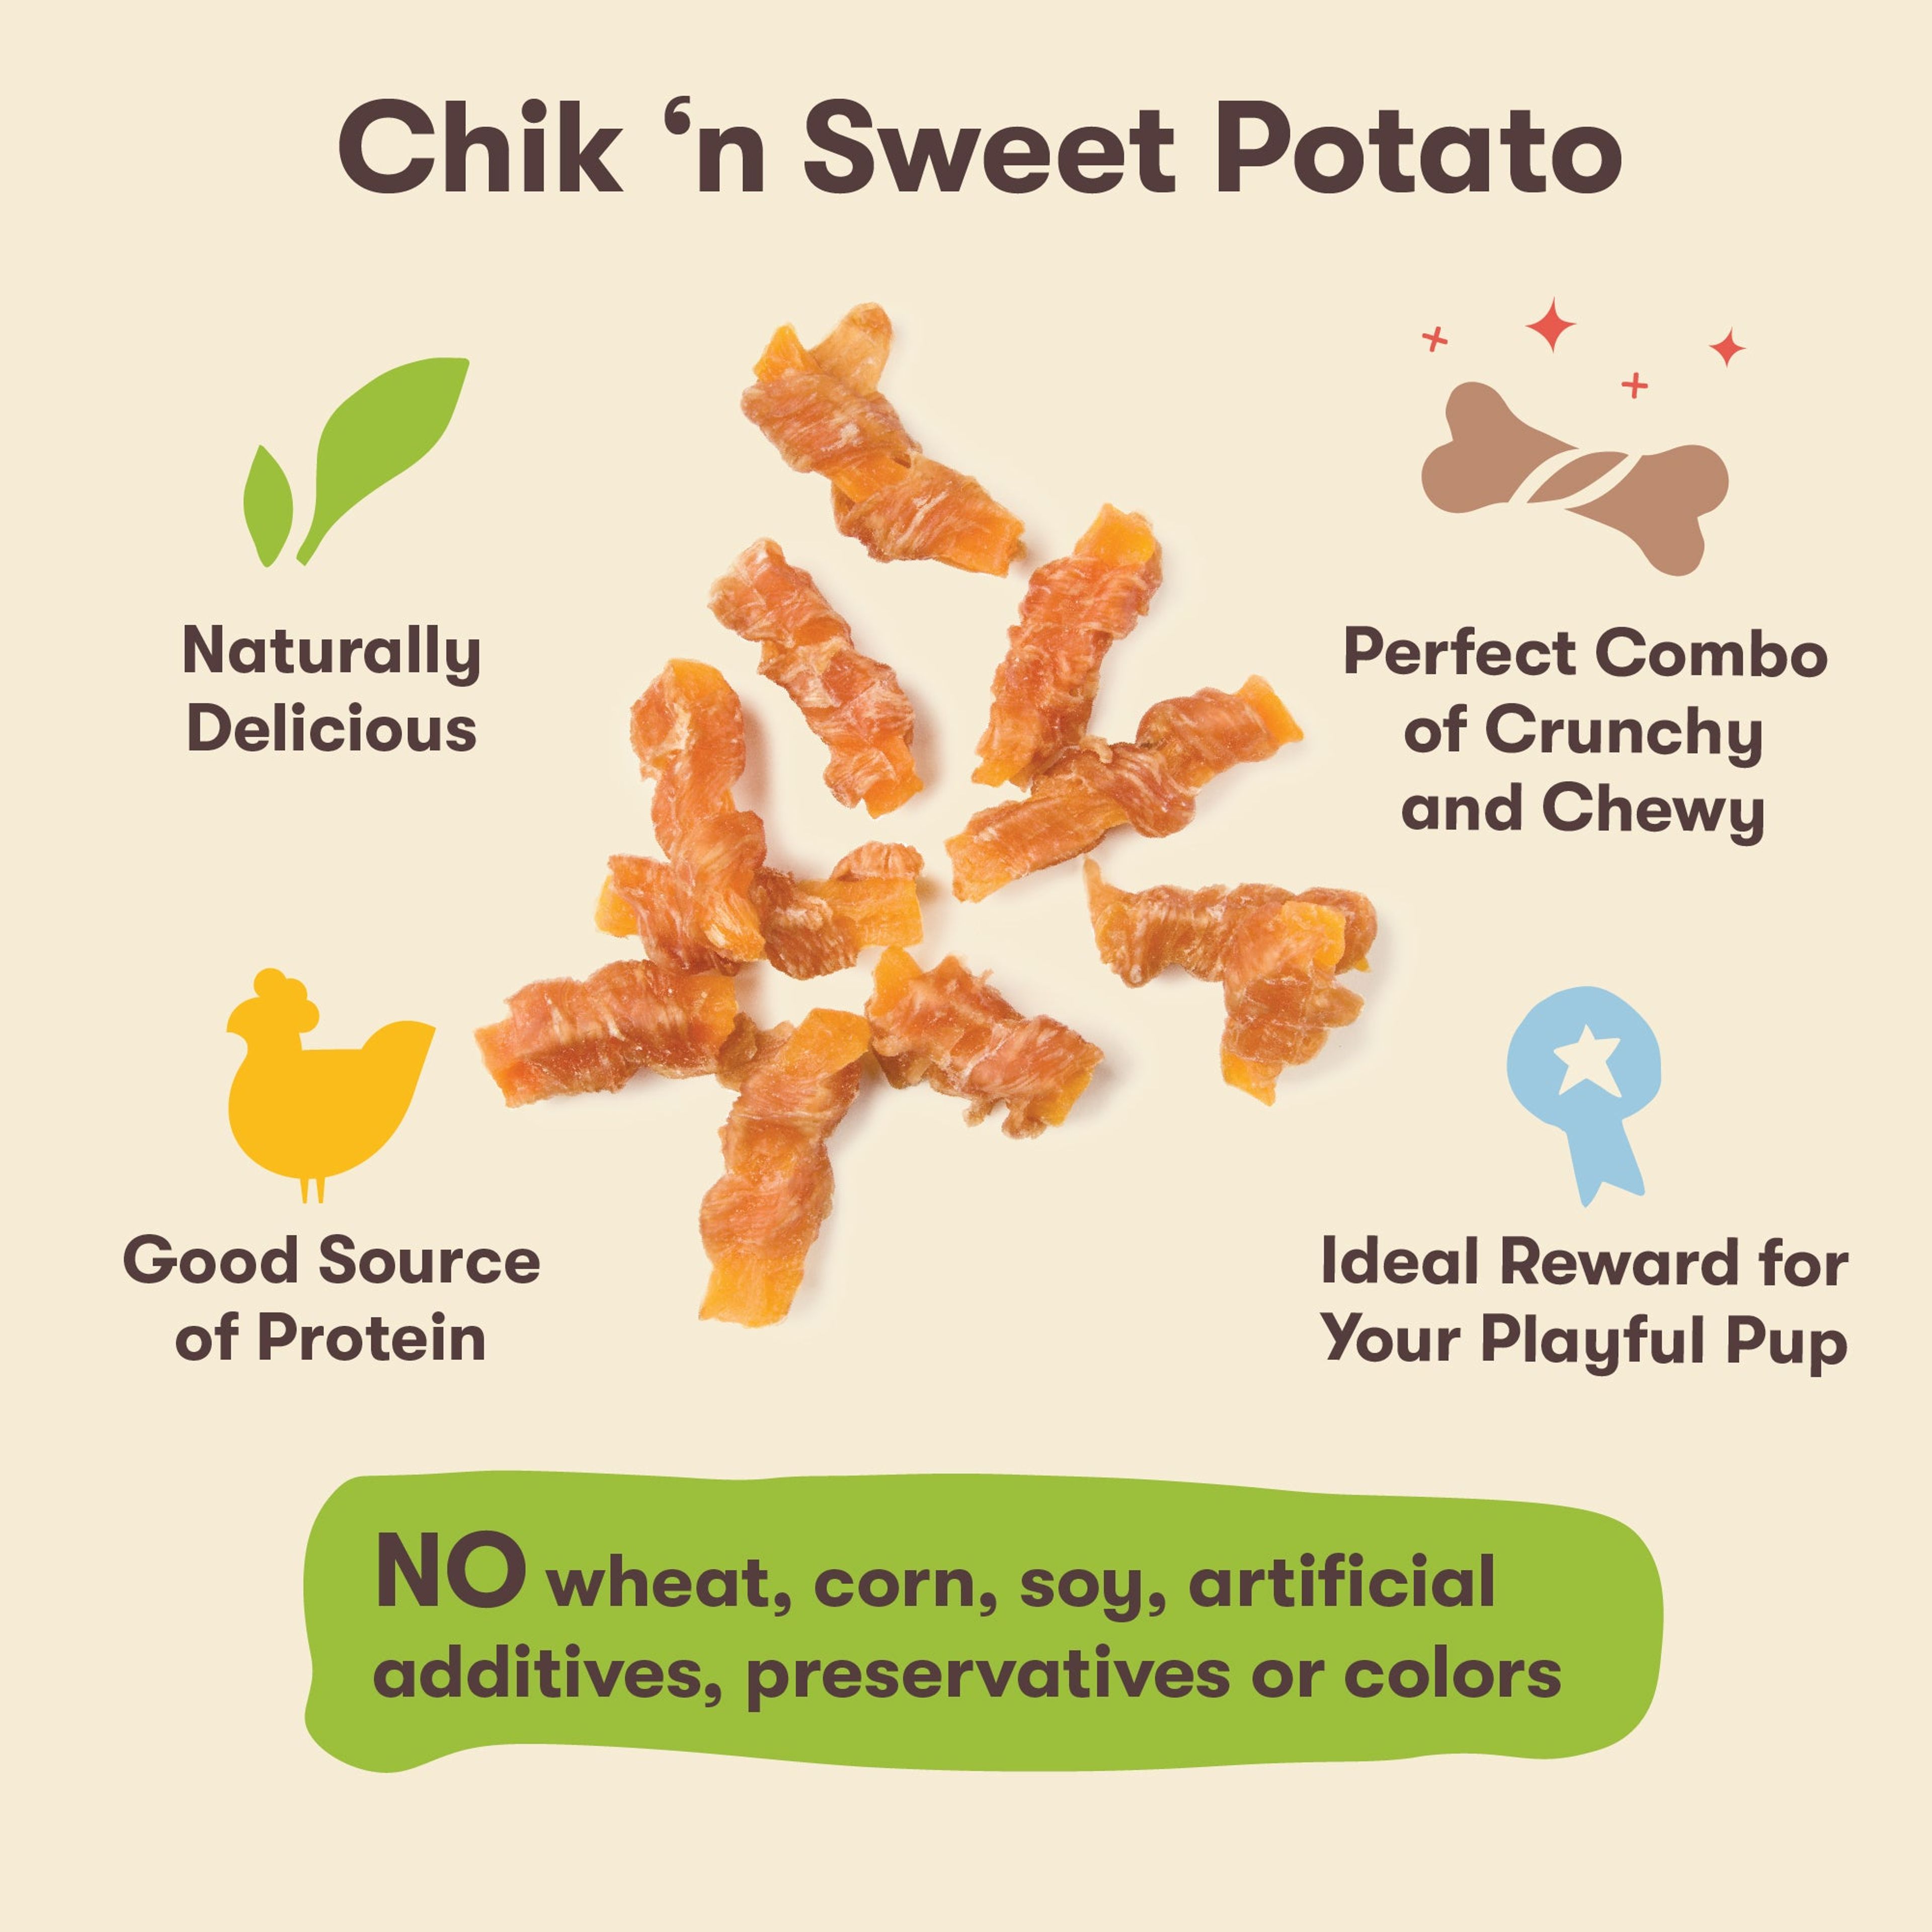 Chik 'n Sweet Potato